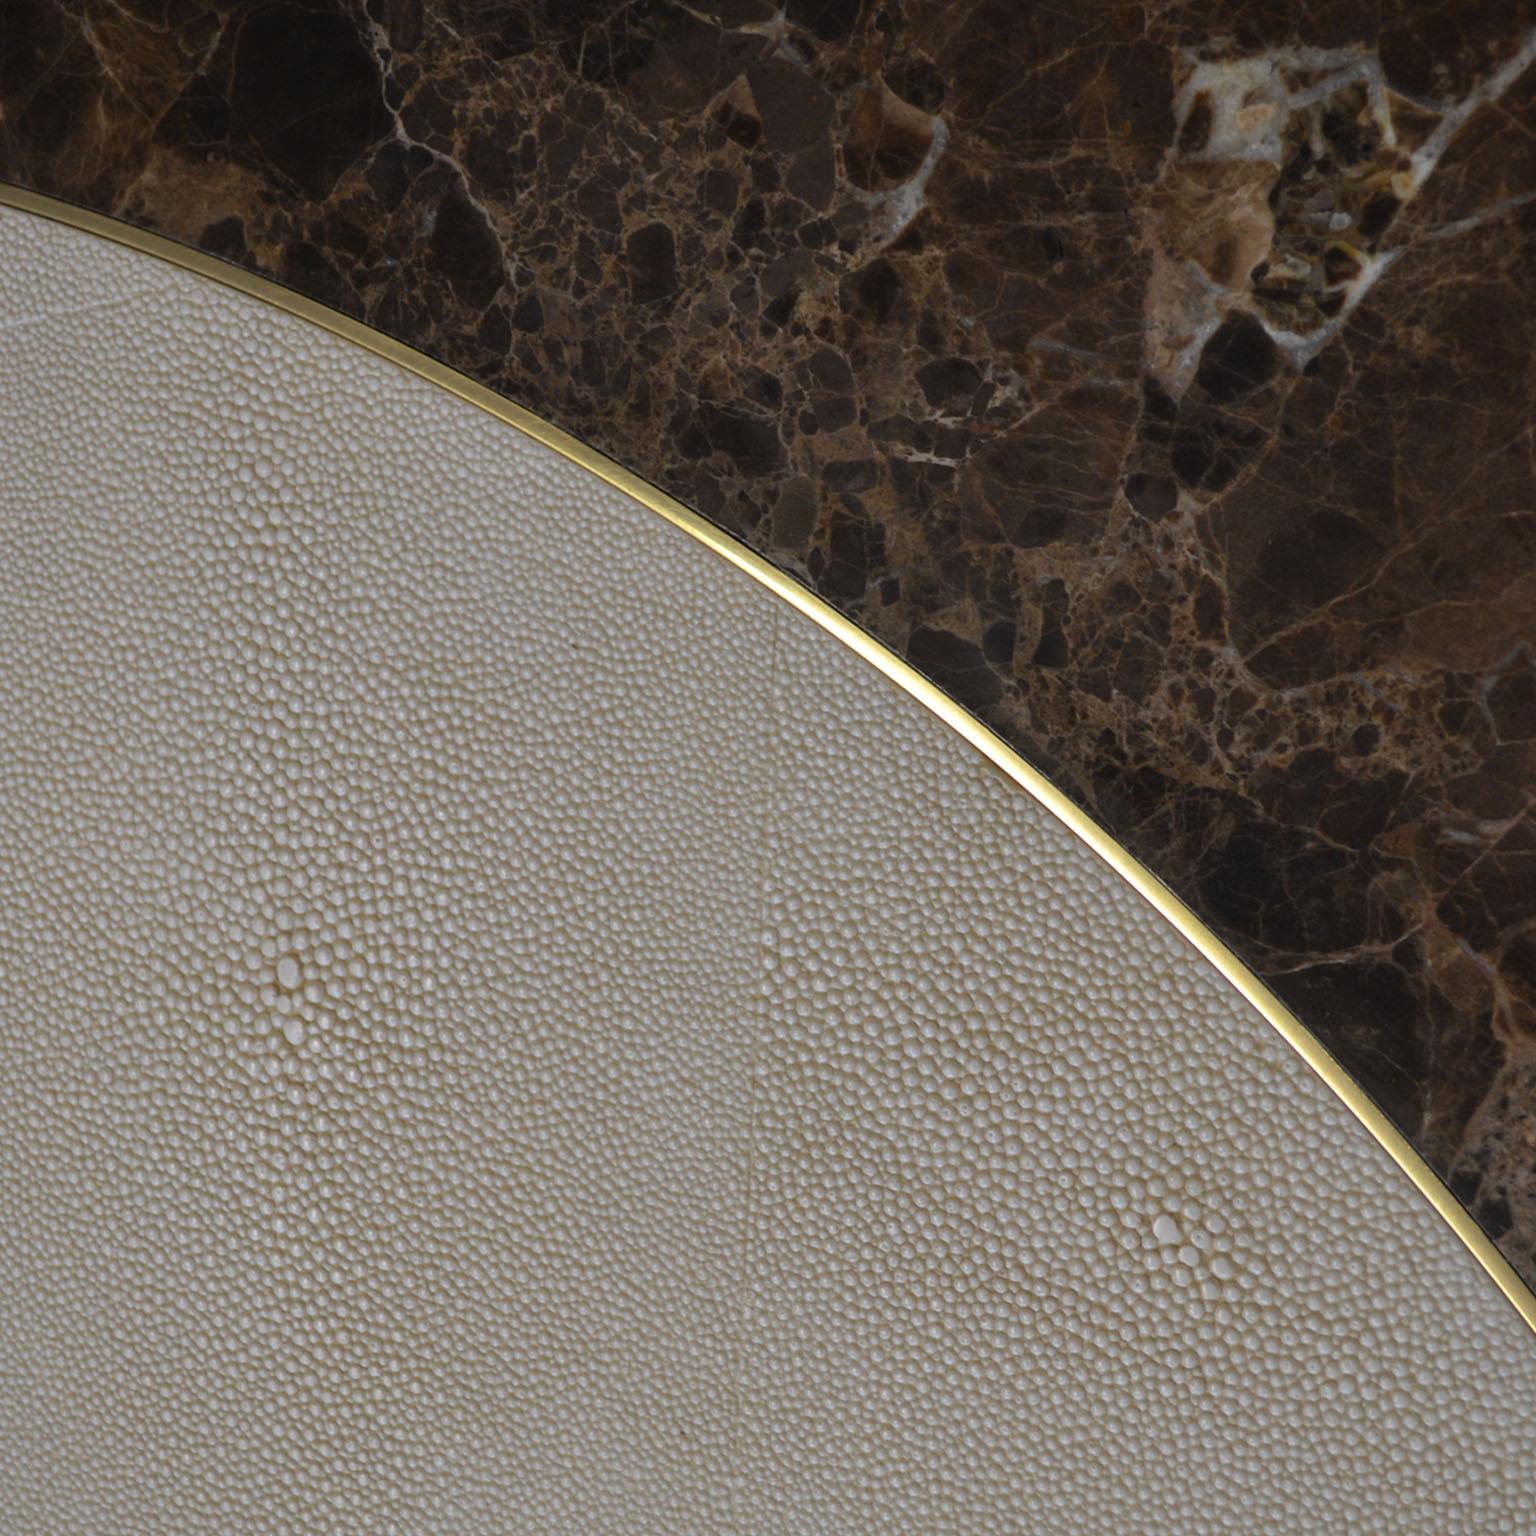 Dans la table ronde Aurelio, le galuchat scagliola rencontre l'élégance du marbre Brown Emperador et les accents raffinés du laiton poli.
L'objectif est de montrer à nos clients un nouveau concept de la technique artistique de la scagliola, où la